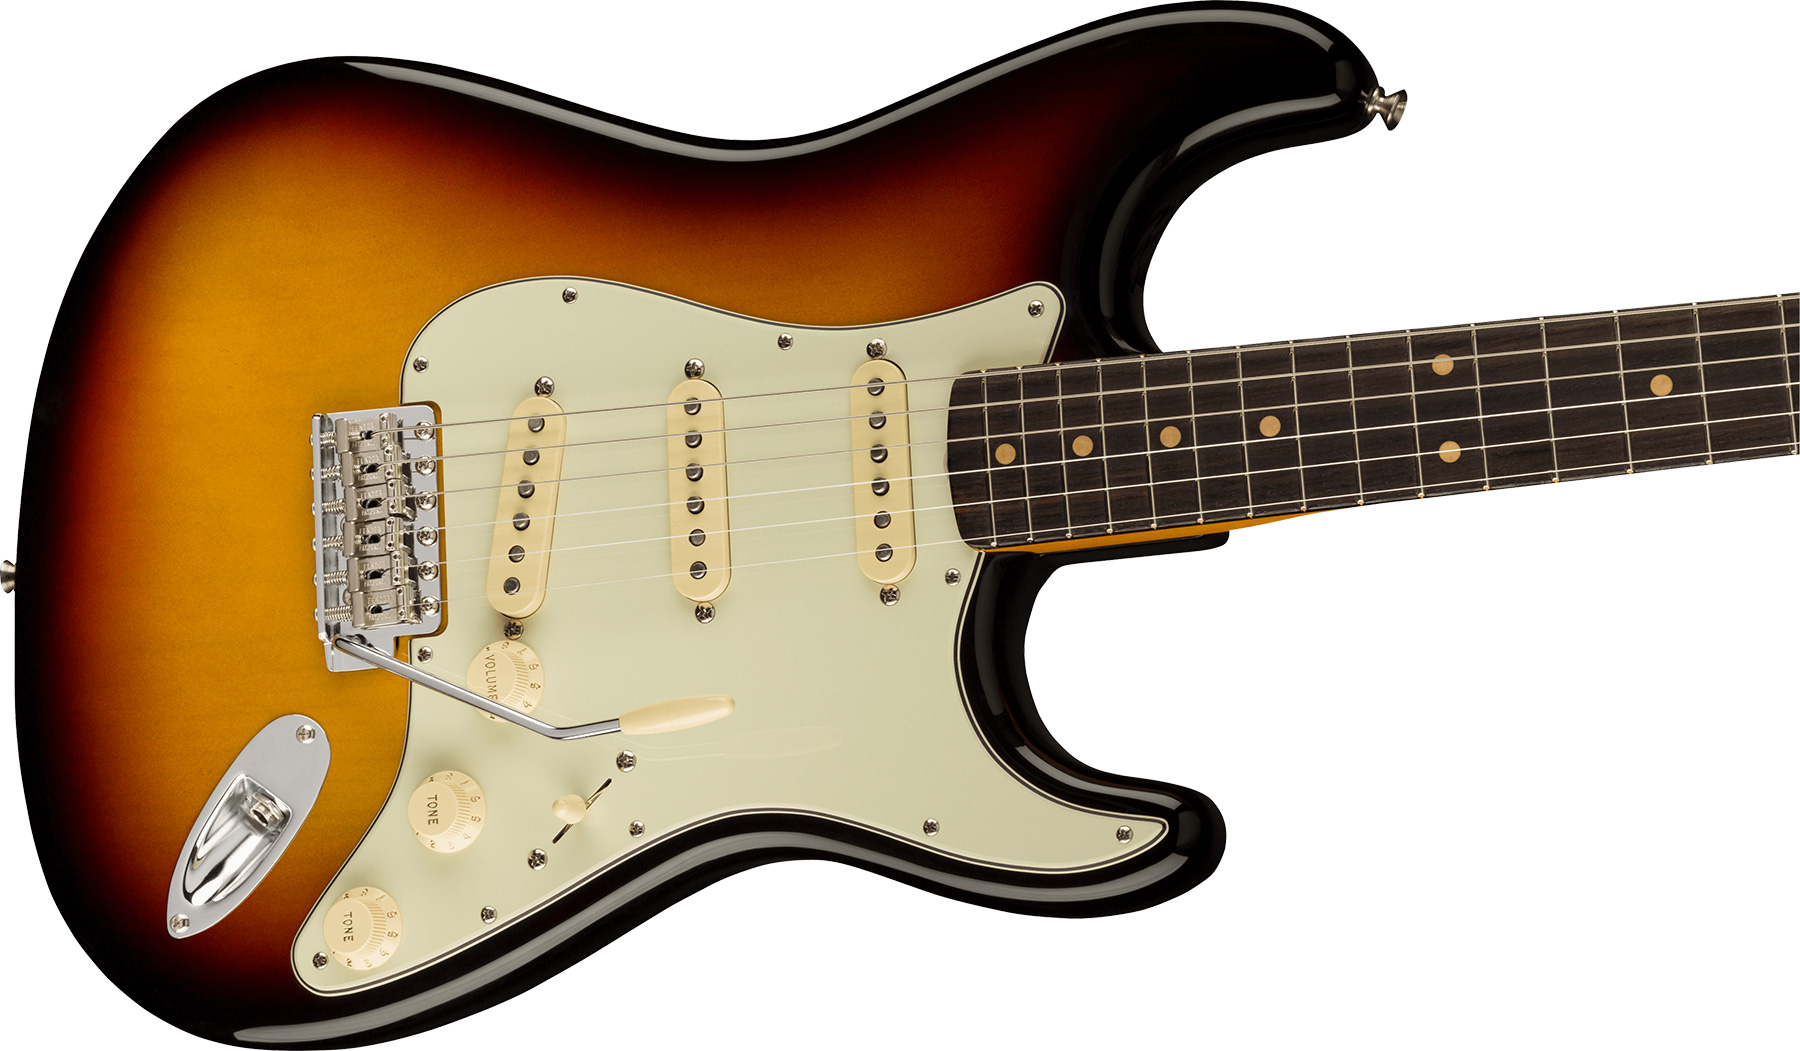 Fender Strat 1961 American Vintage Ii Usa 3s Trem Rw - 3-color Sunburst - E-Gitarre in Str-Form - Variation 2